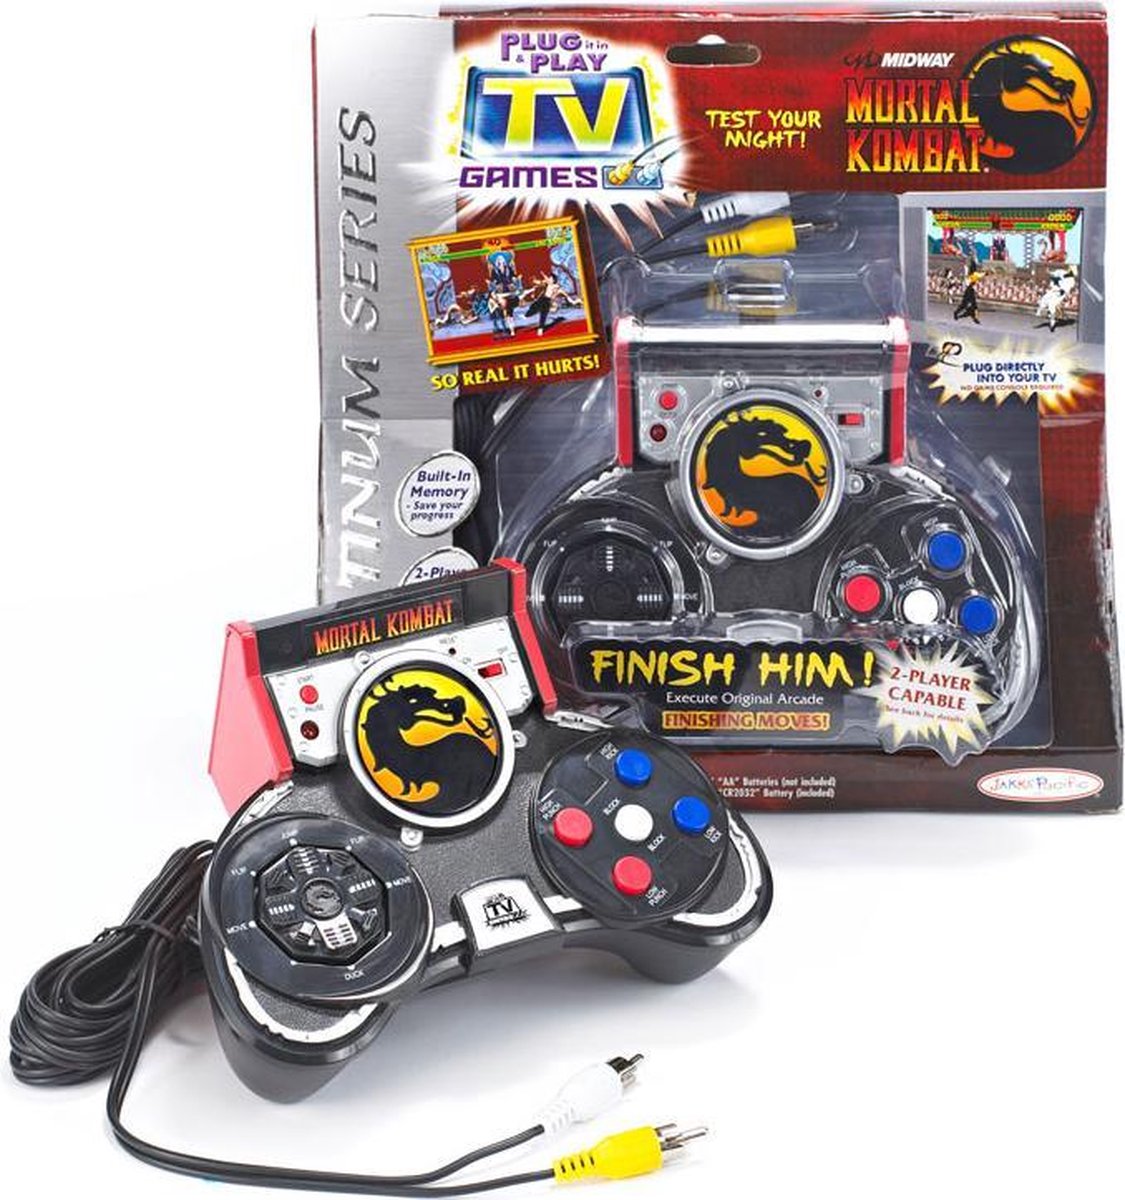 Mortal Kombat Plug&Play Controller - Midway